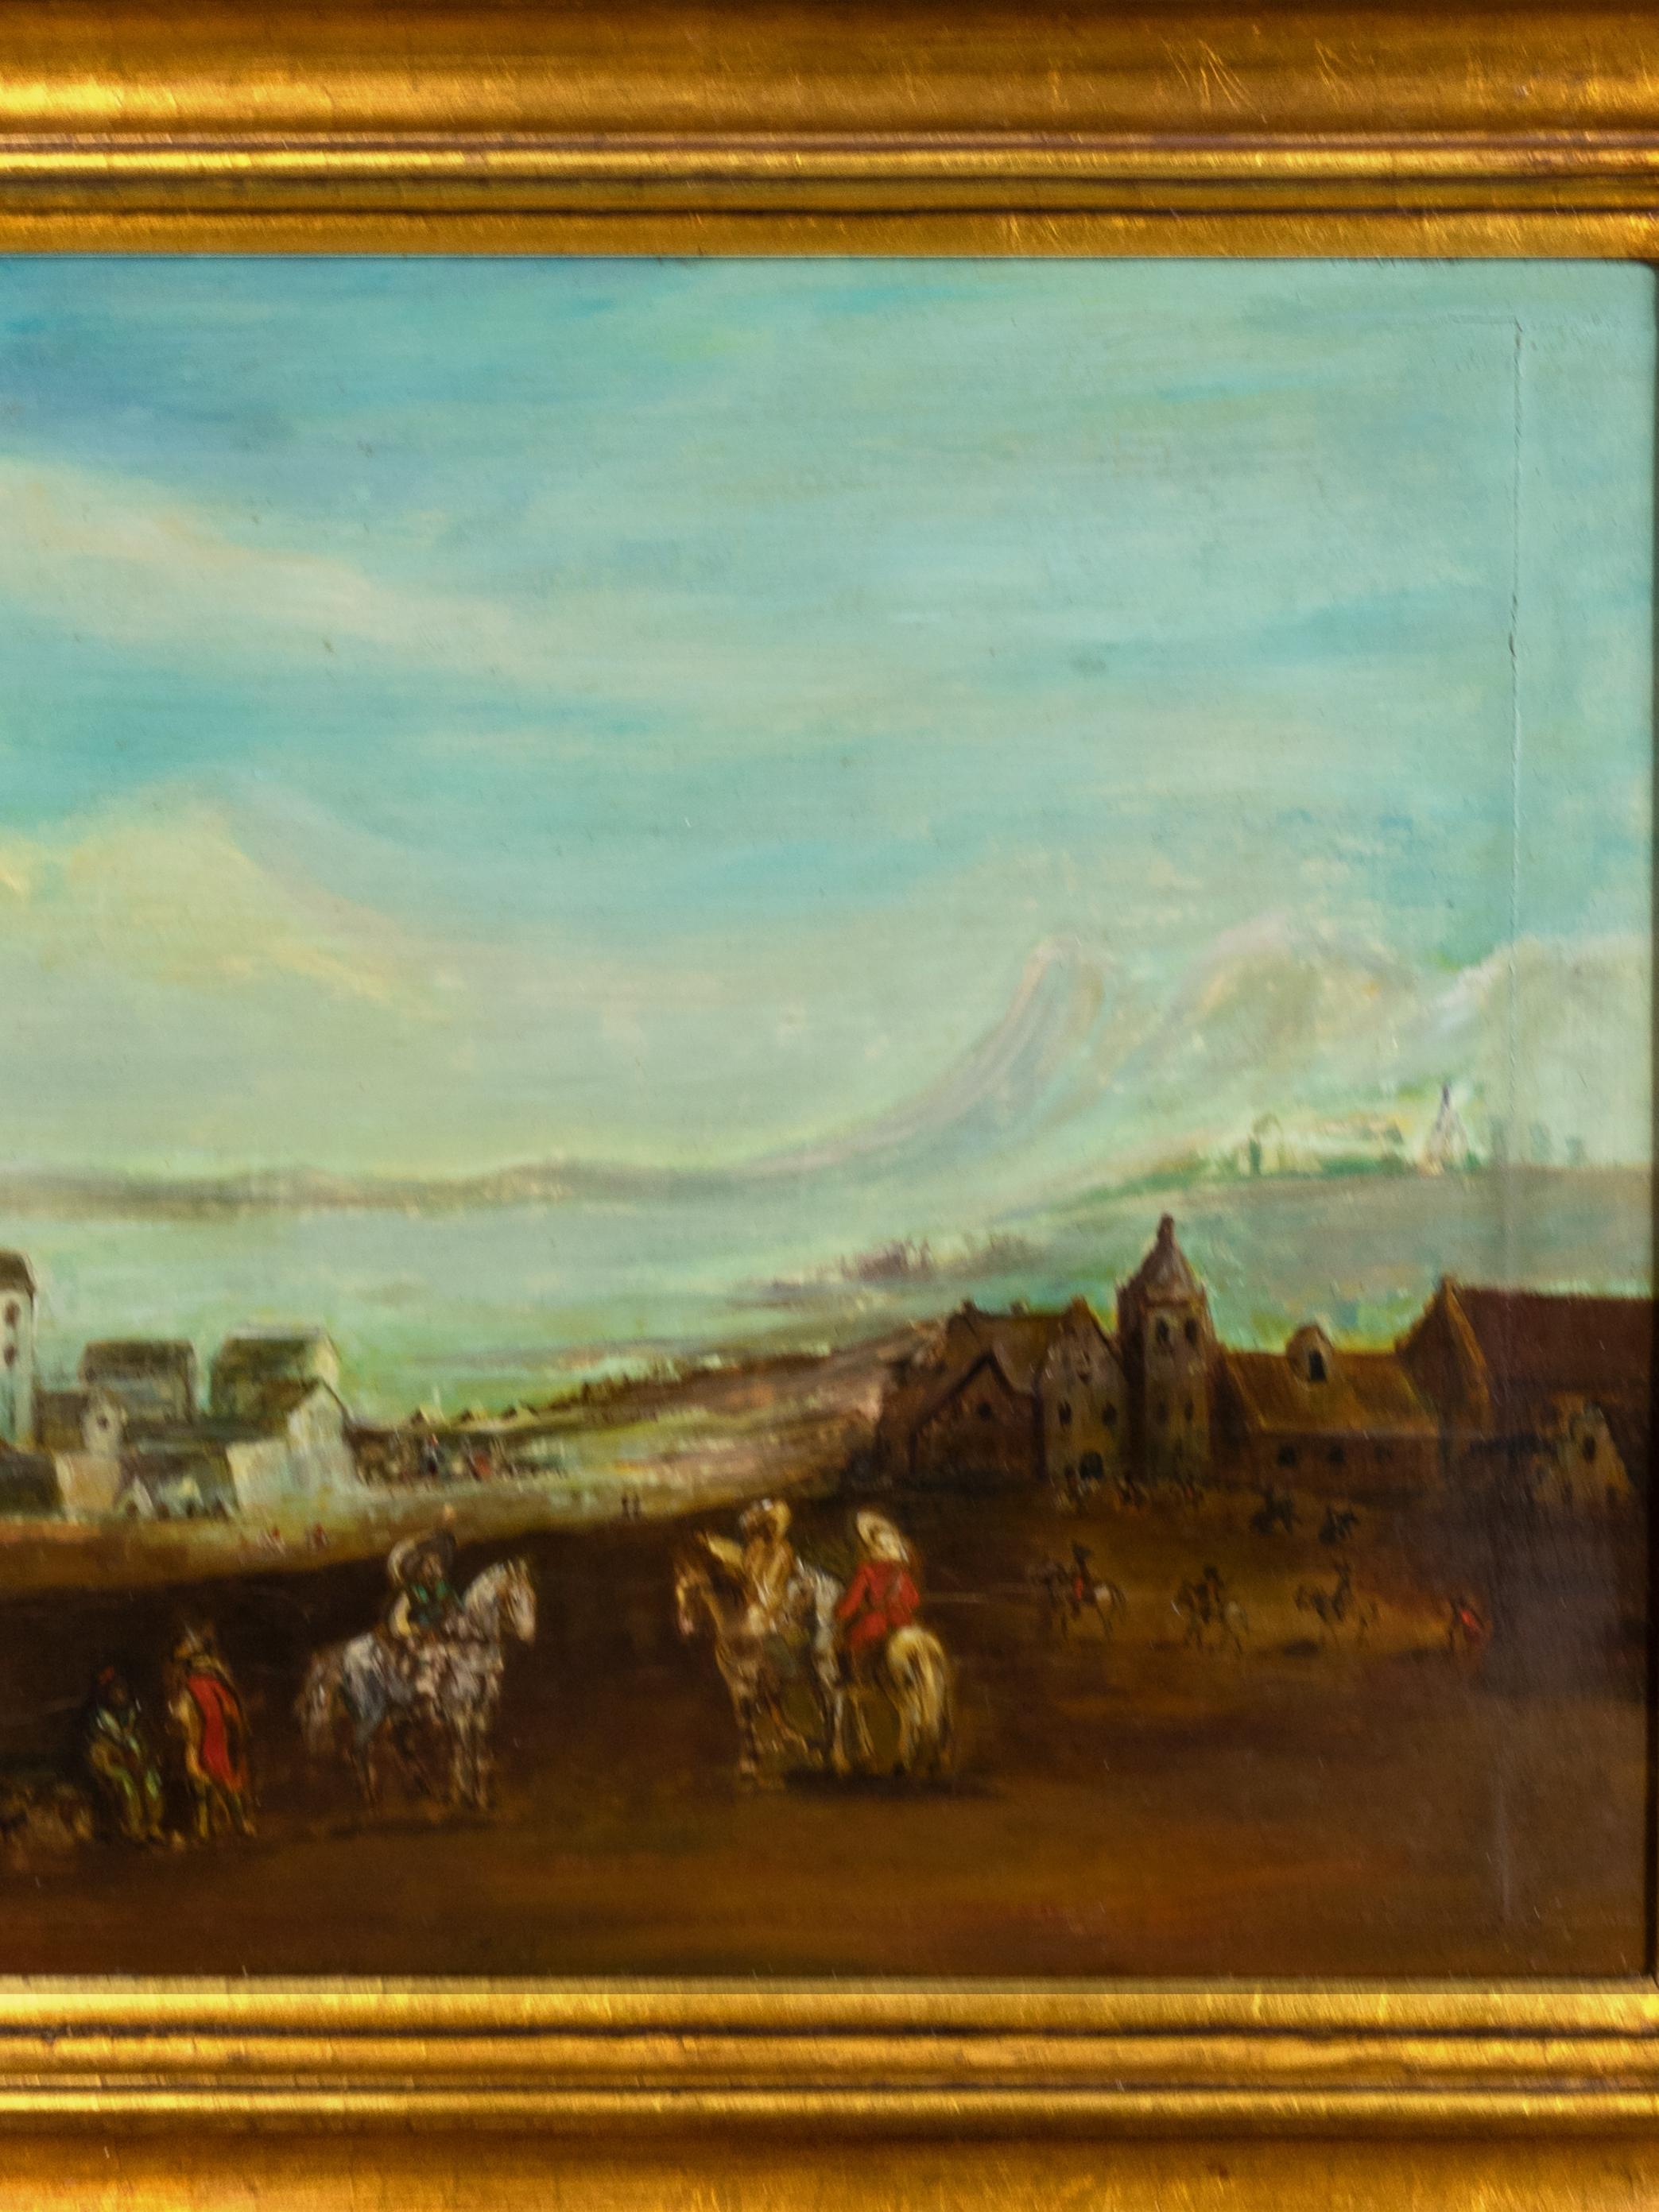 Un thème à l'huile sur le thème de la romance du Vieux Monde représente des cavaliers arrivant dans une petite ville près d'une rivière et de montagnes. 

Cadre 64 x 50 cm 
Toile : 50 x 37,5 cm

